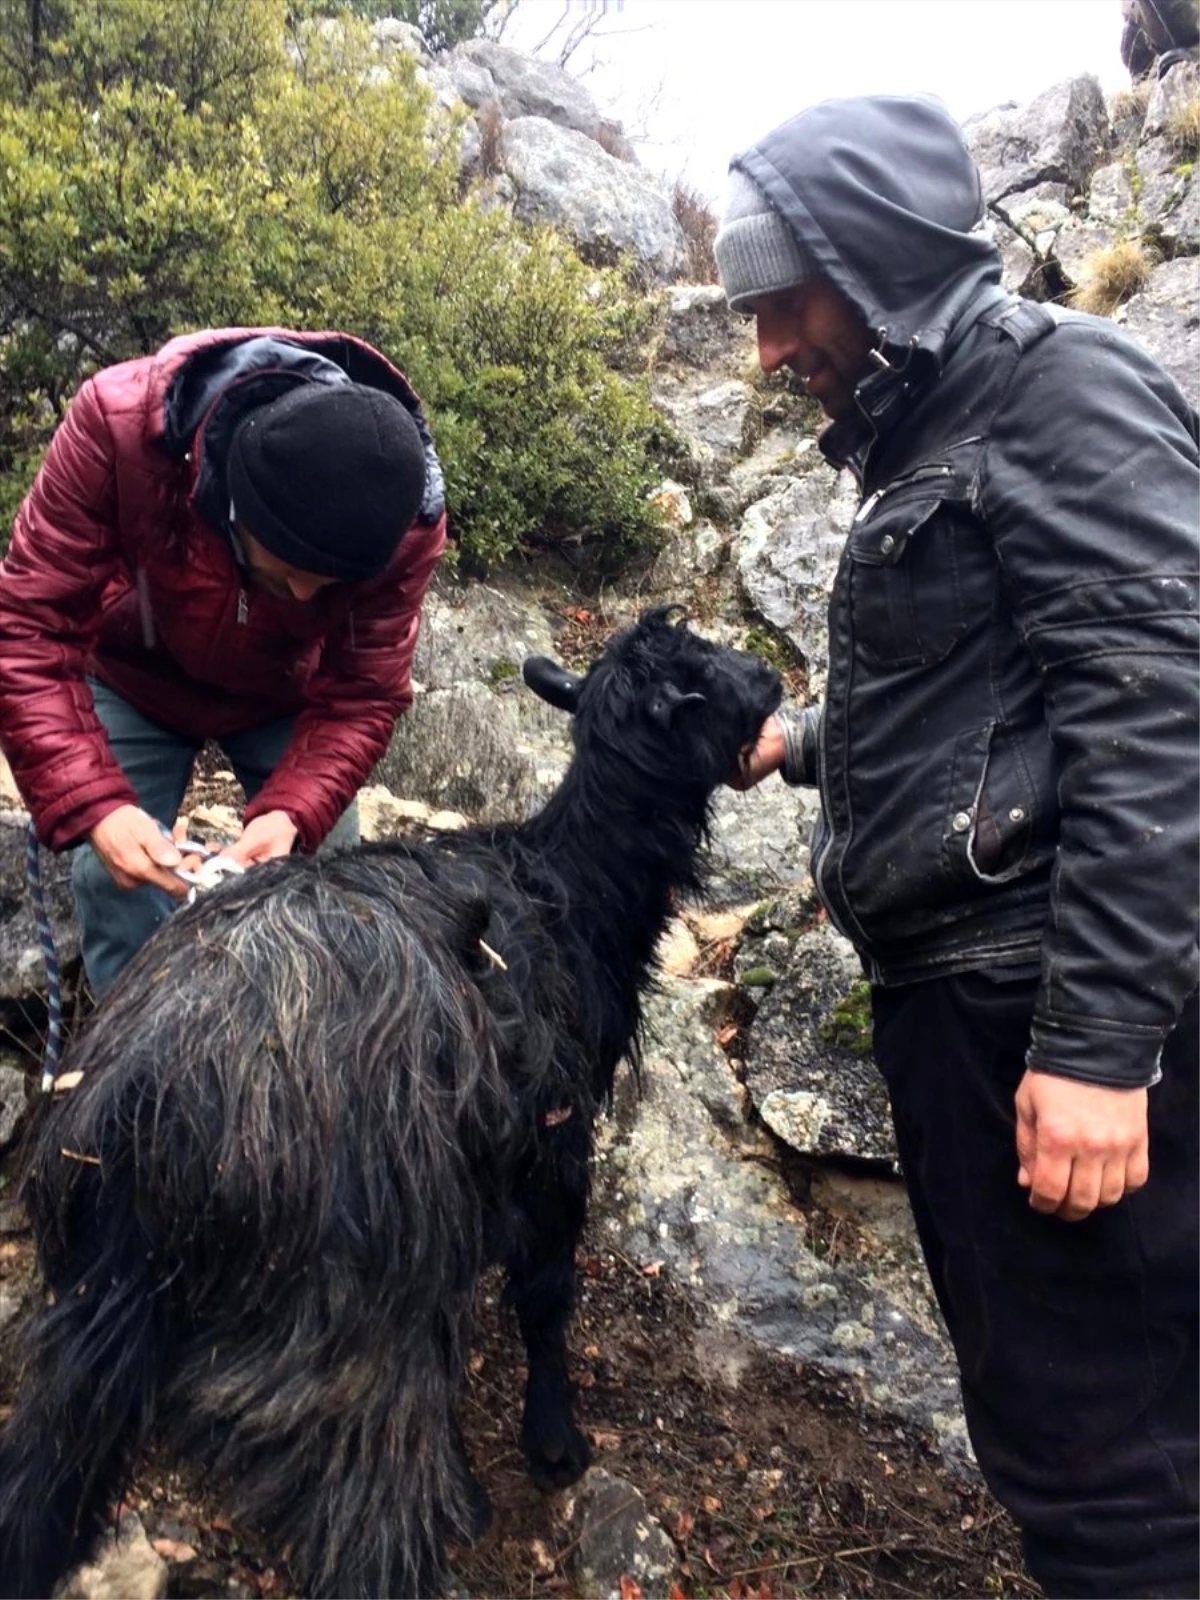 Kayalıklarda mahsur kalan keçiyi AFAD ekipleri kurtardı